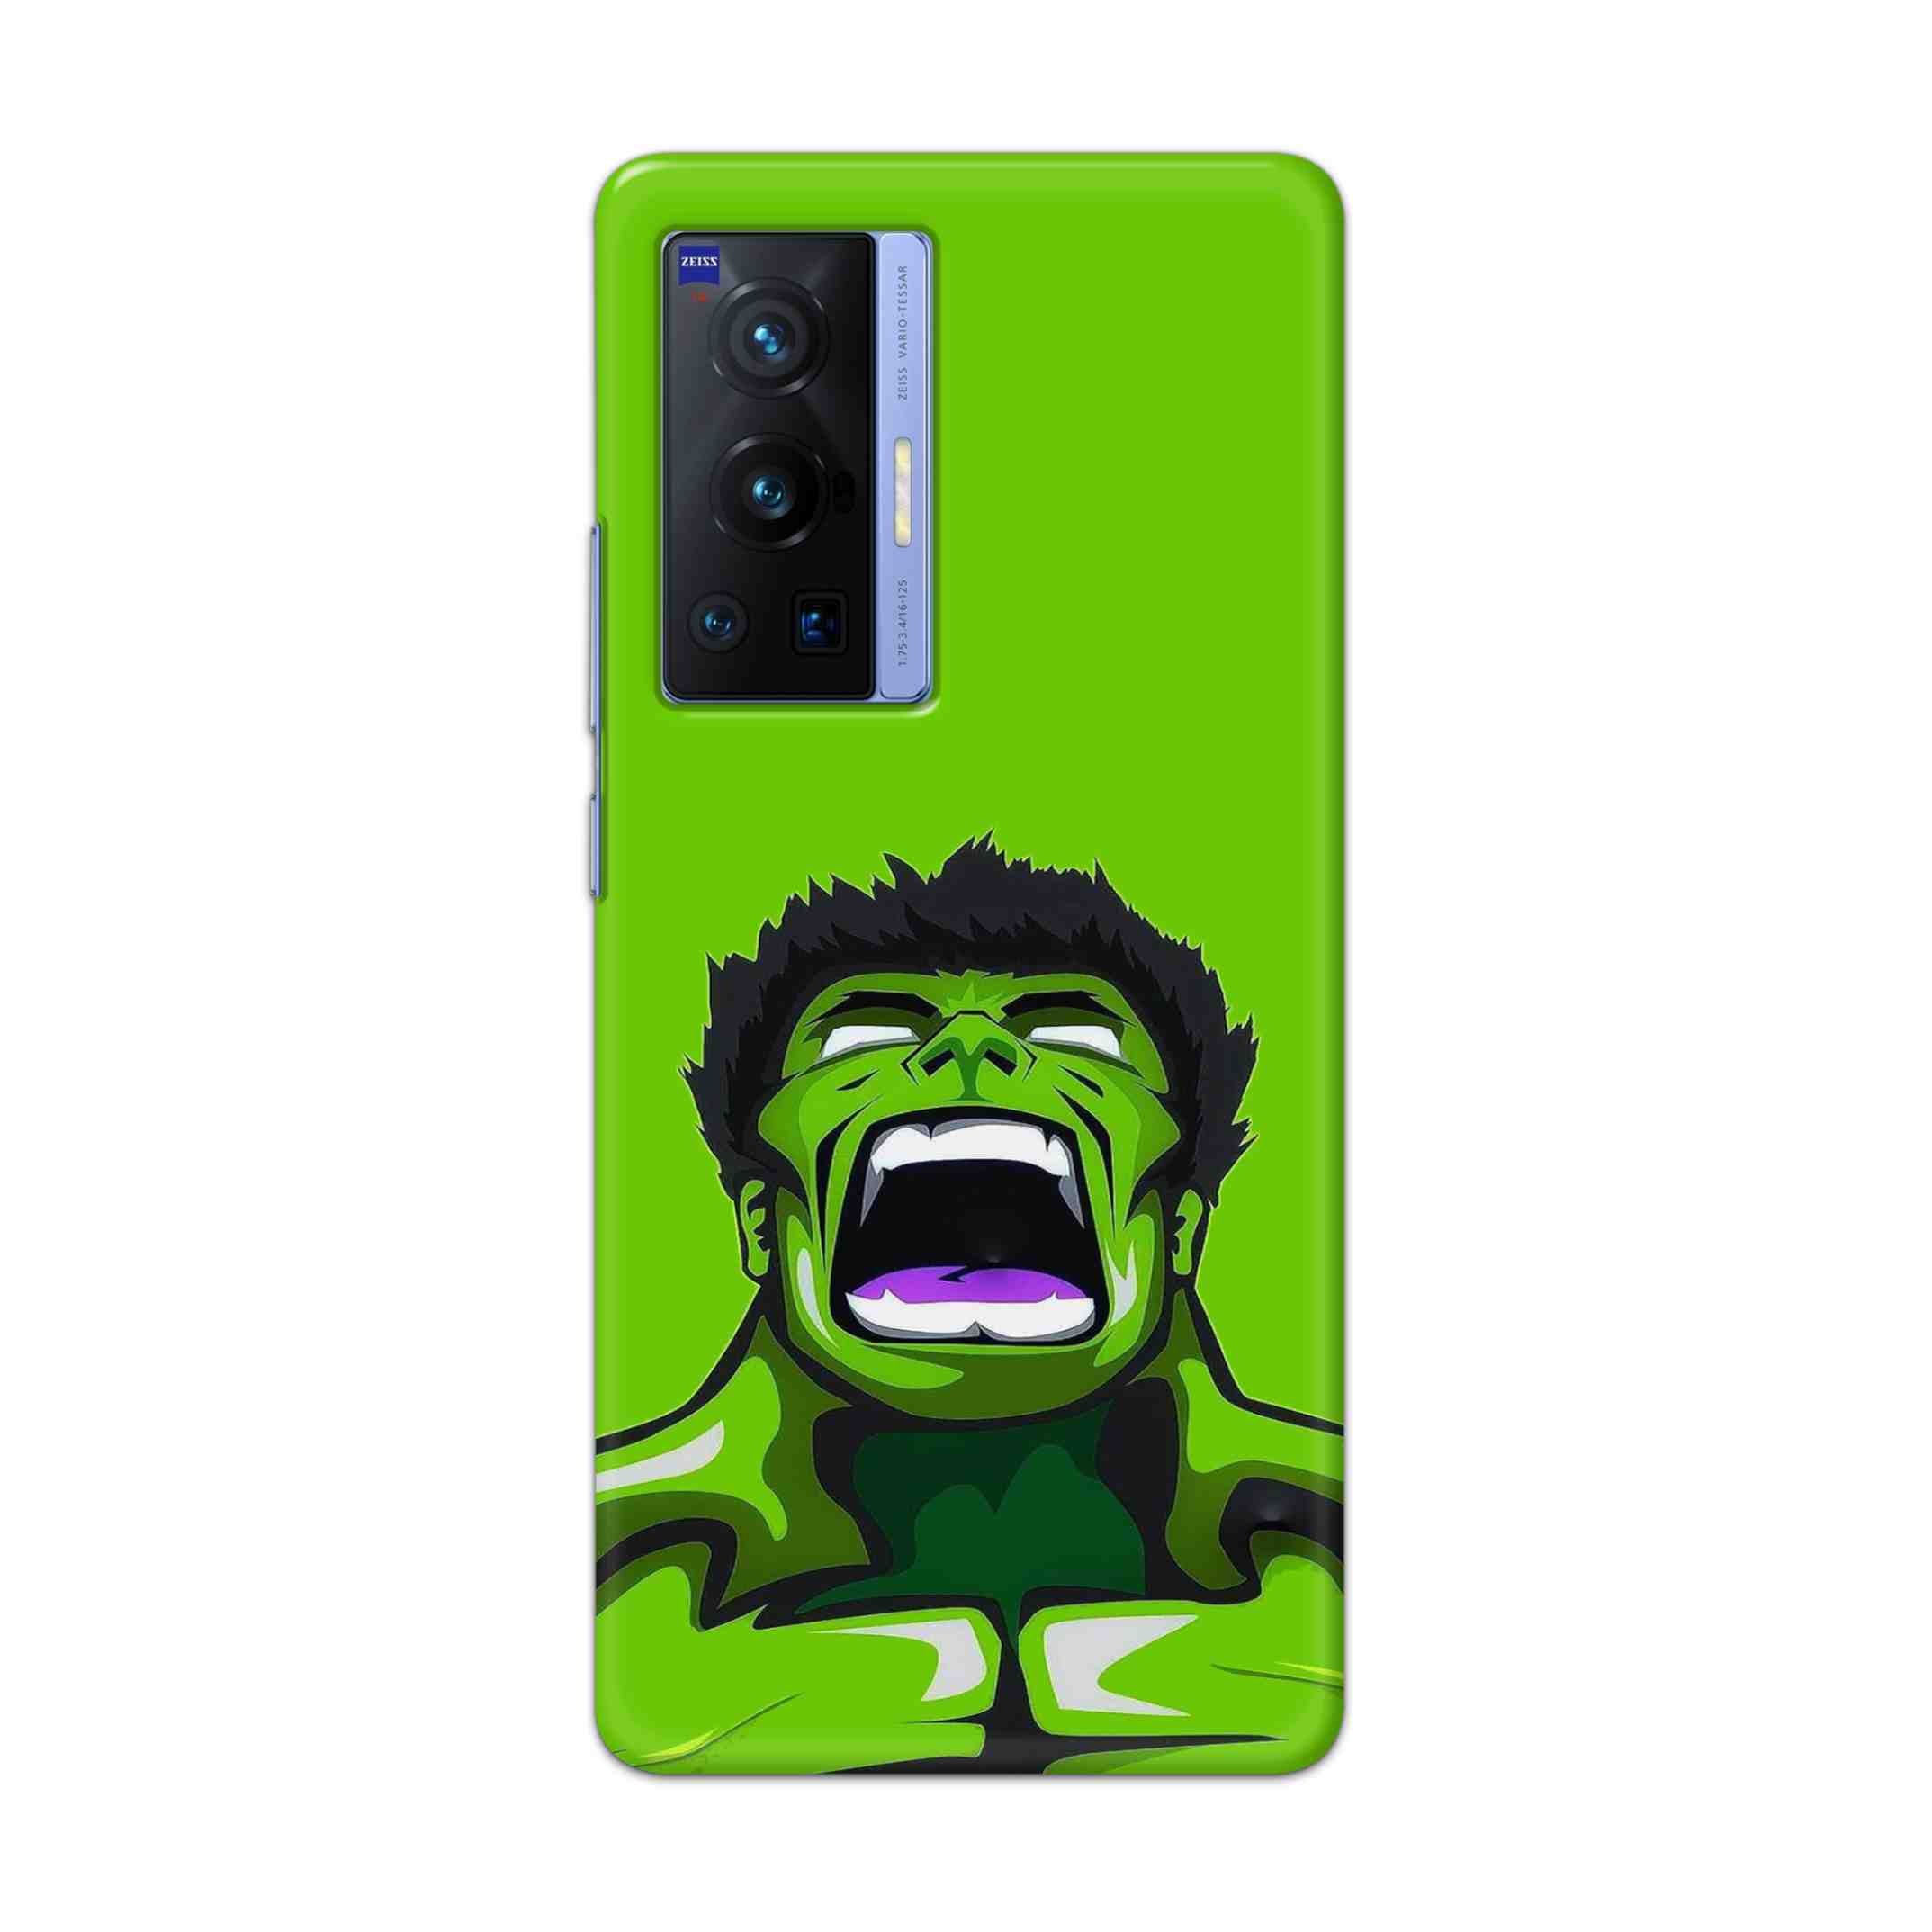 Buy Green Hulk Hard Back Mobile Phone Case Cover For Vivo X70 Pro Online